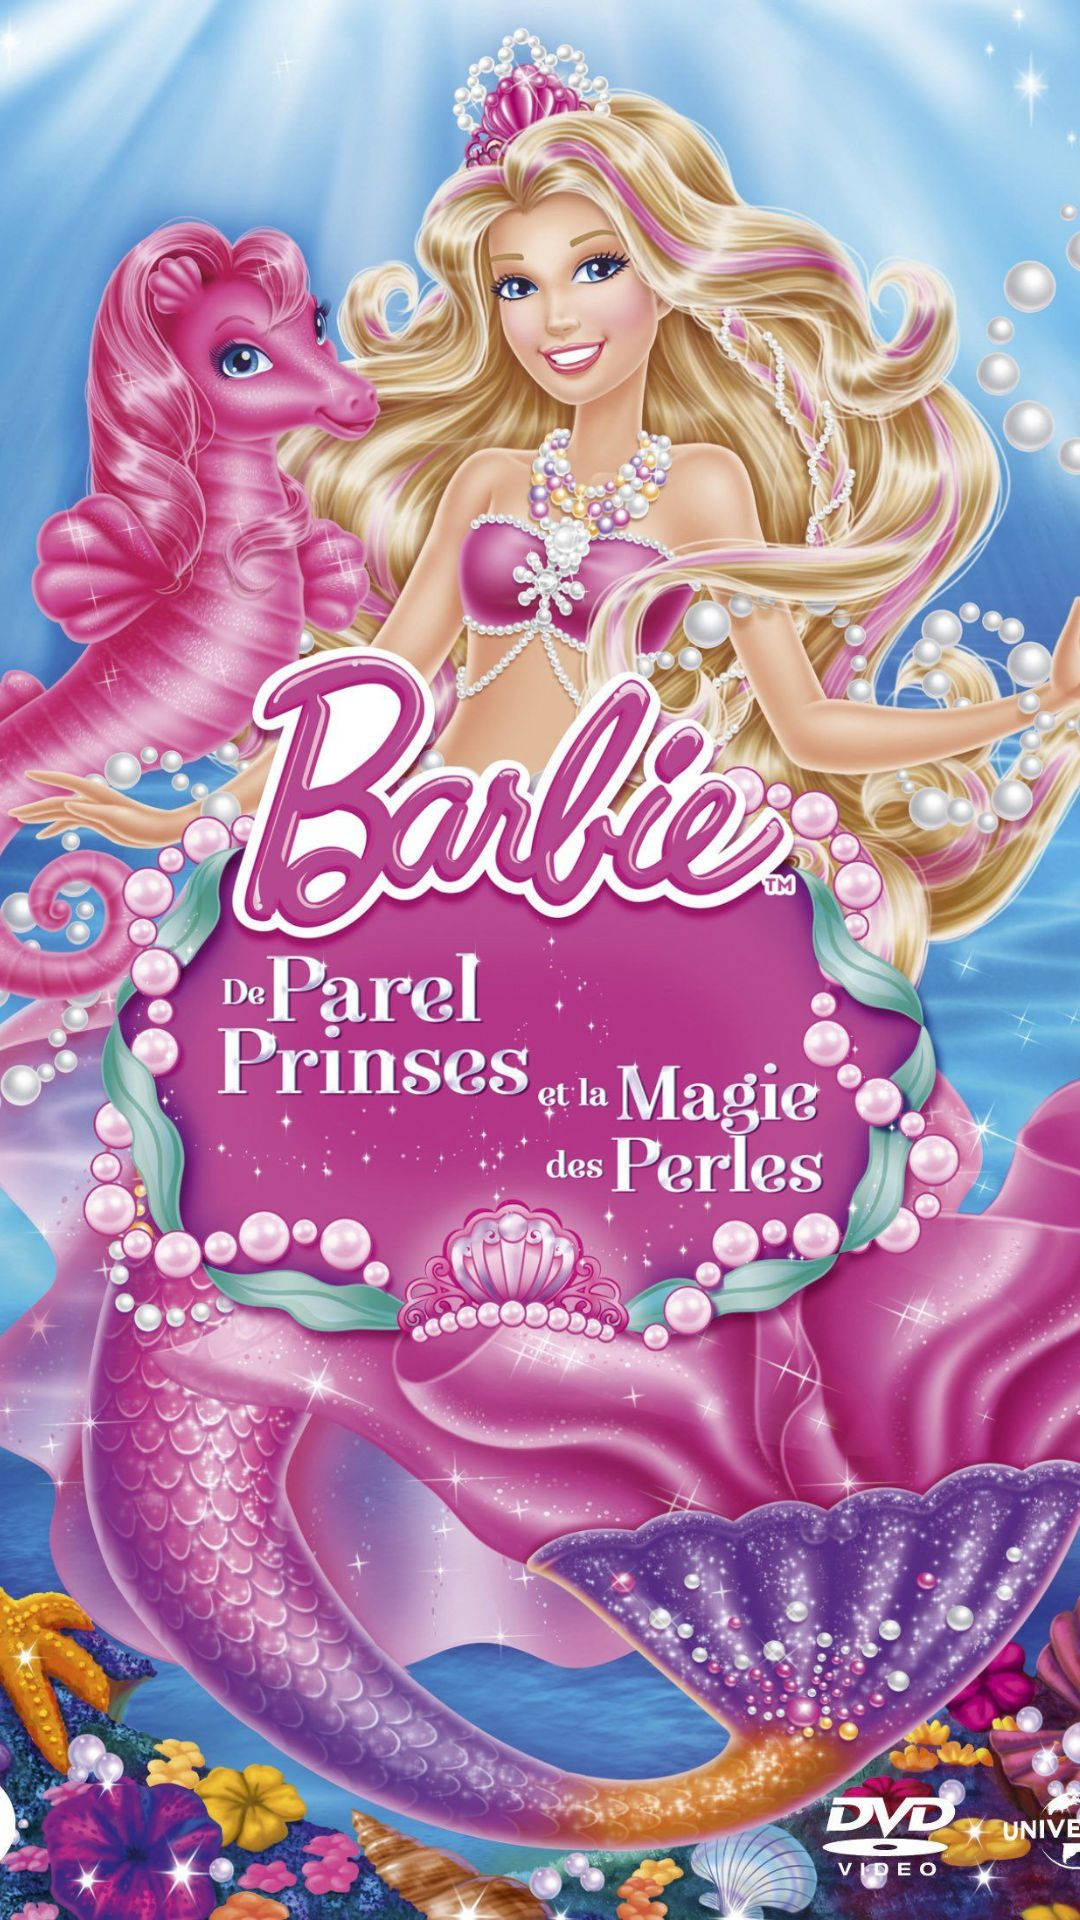 Perle Barbie Havfrue Wallpaper